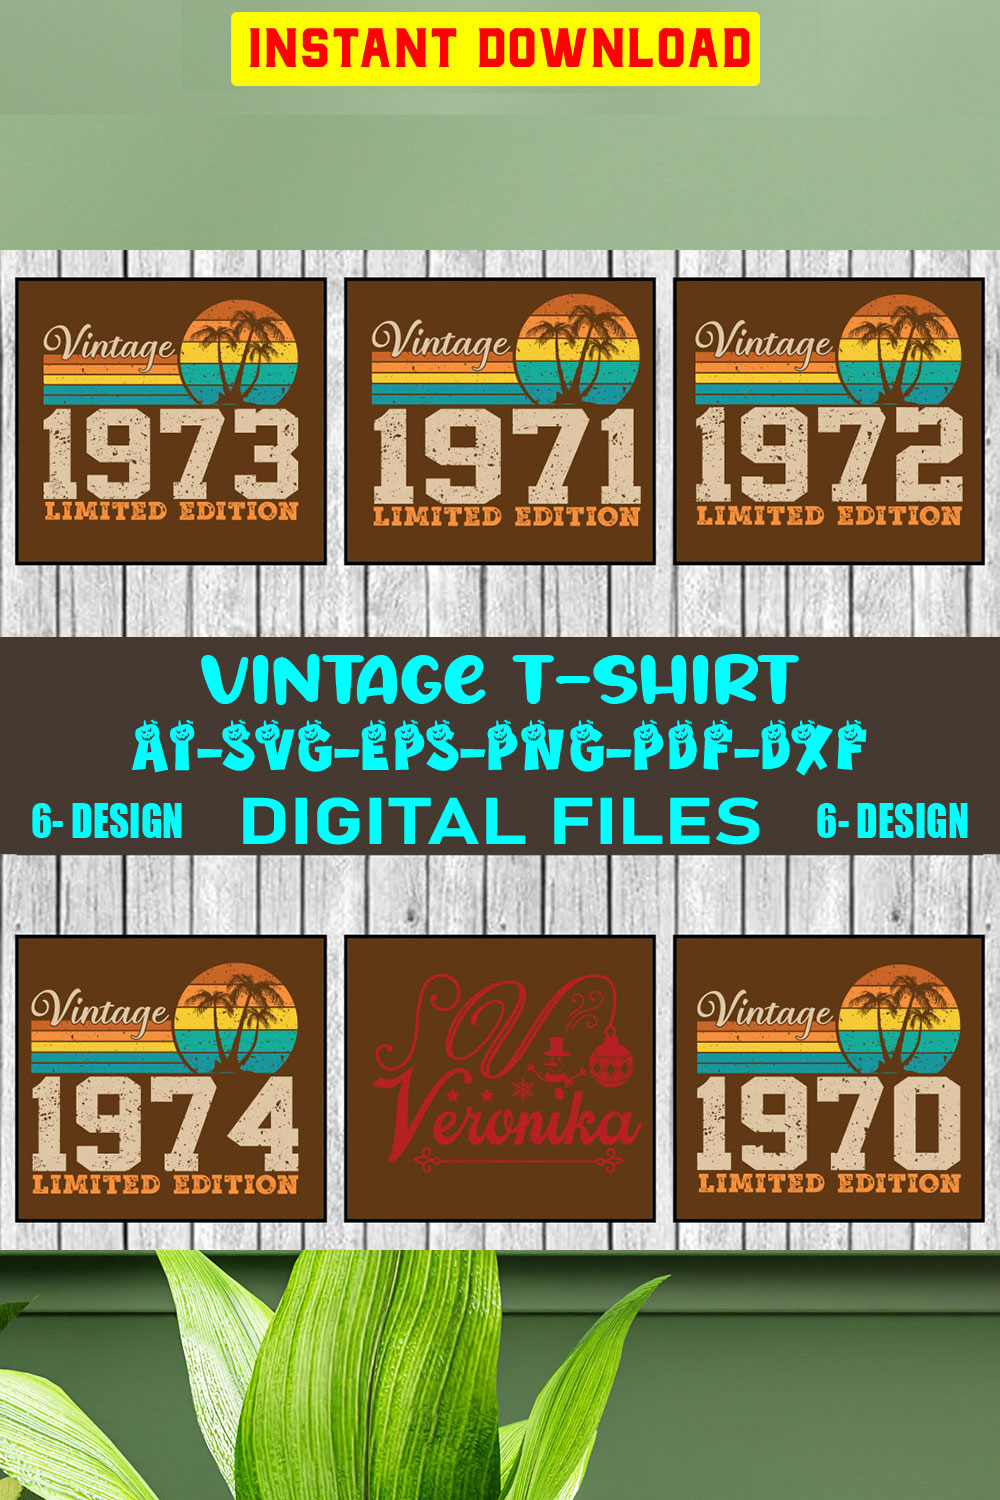 Vintage T-shirt Design Bundle Vol-1 pinterest preview image.